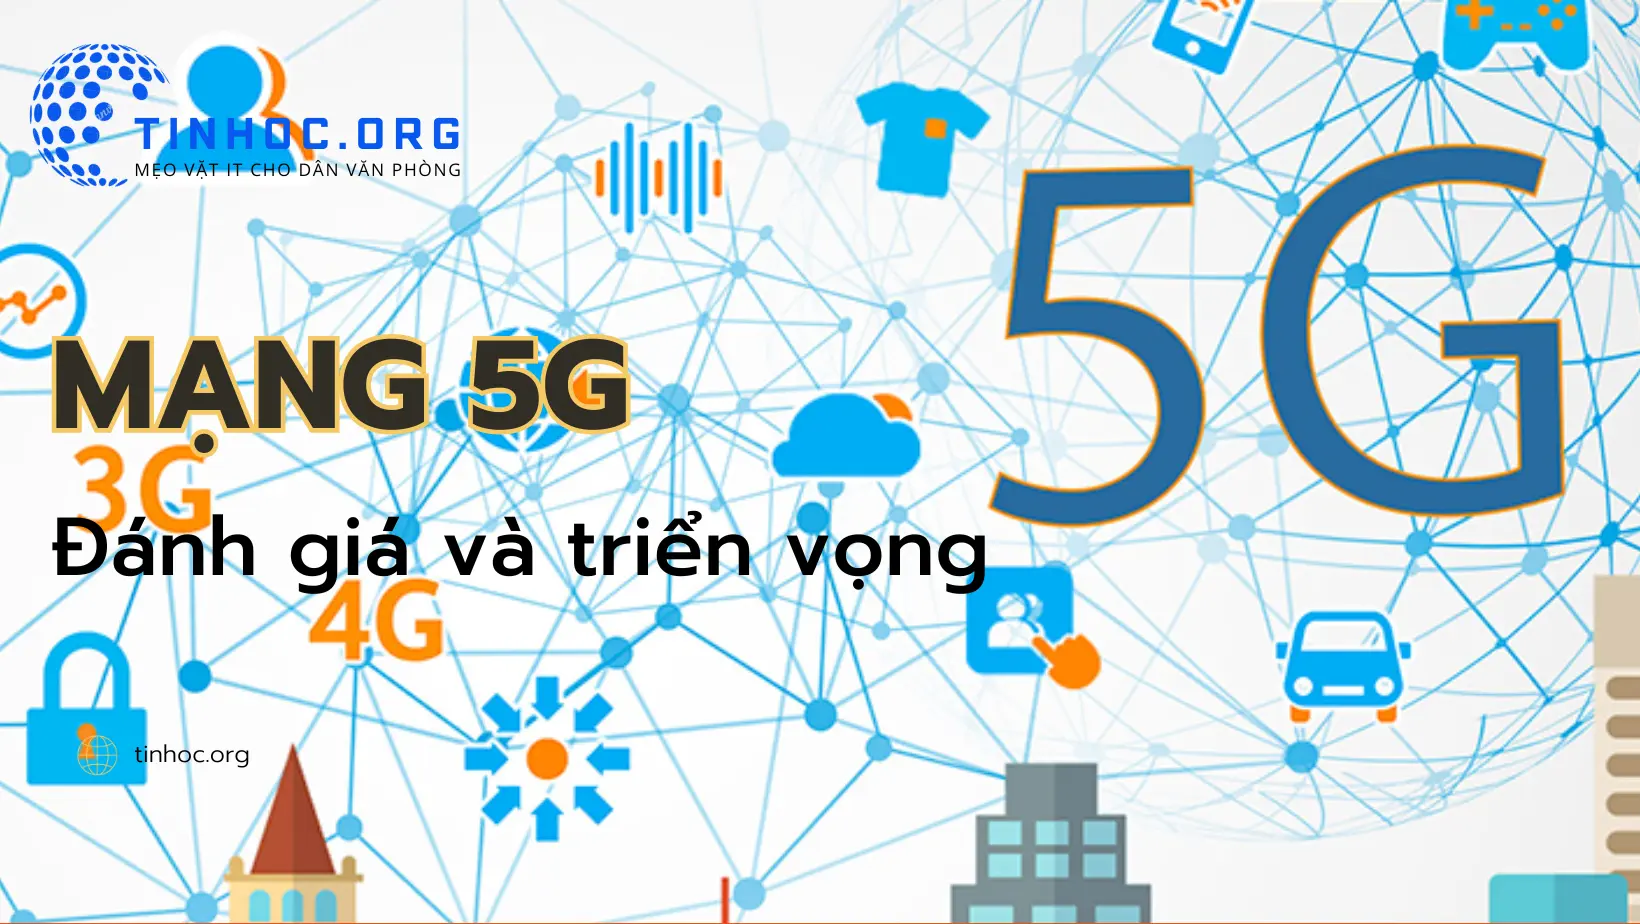 Mạng 5G là một tiêu chuẩn mạng di động mới cung cấp tốc độ kết nối siêu nhanh, băng thông rộng và khả năng kết nối nhiều thiết bị cùng lúc.